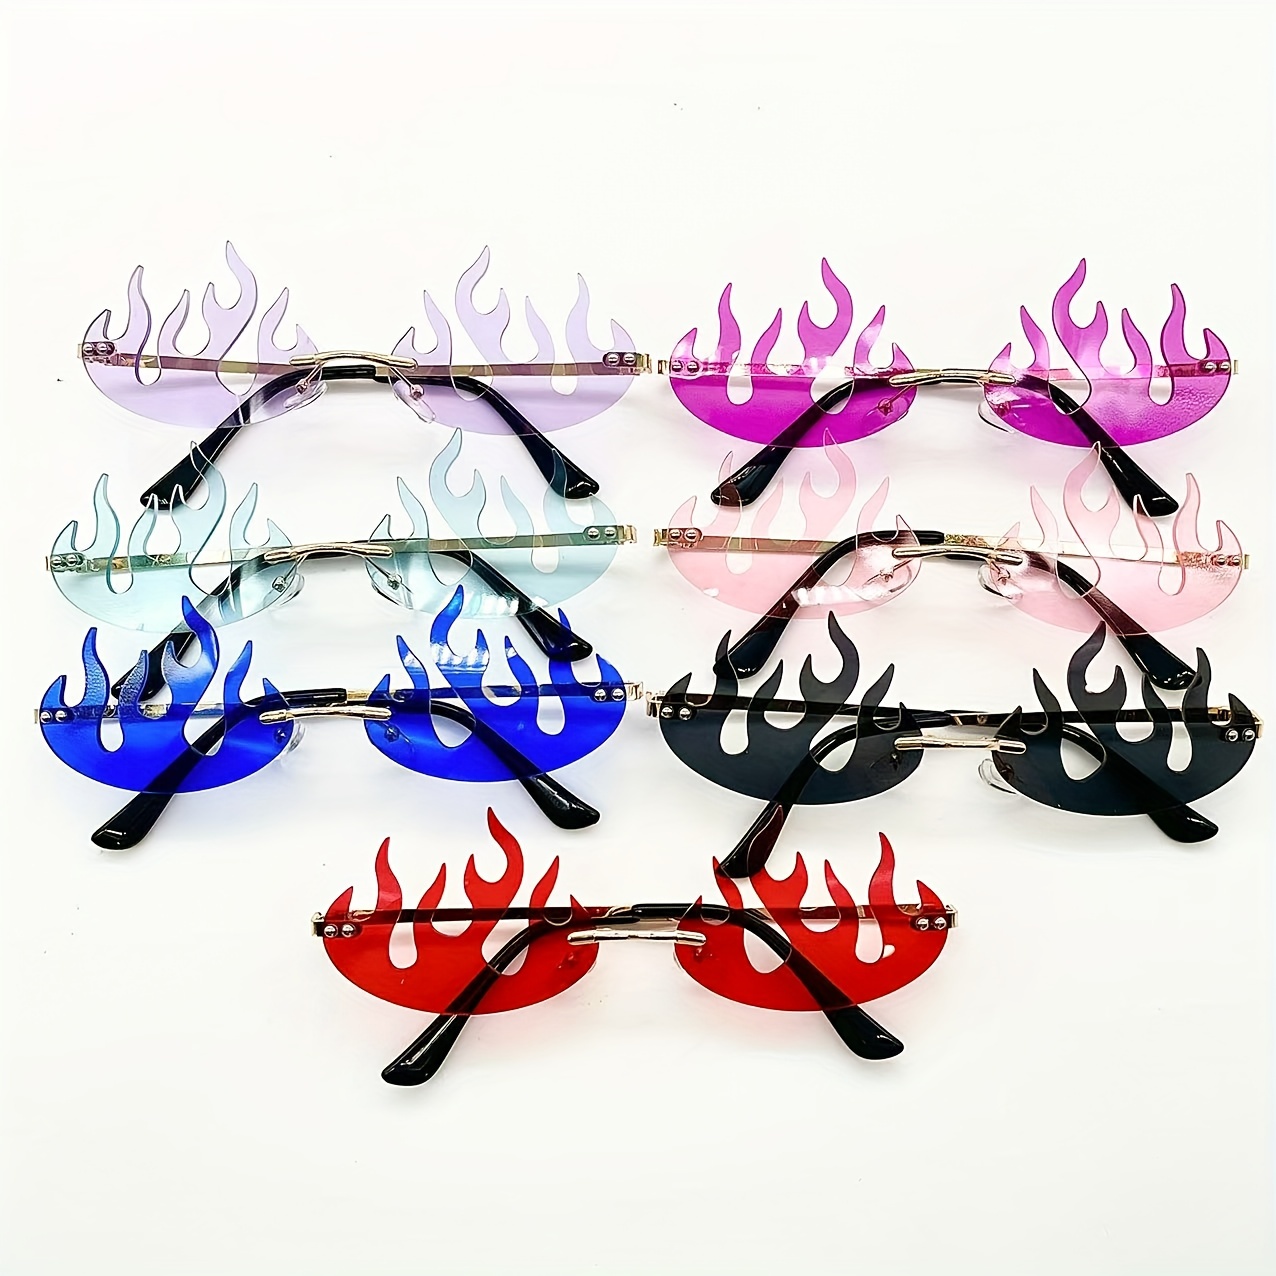 Óculos Doflamingo – Óculos de sol elegantes e inspirados em Doflamingo que  criam uma aparência suave e sofisticada, ótimos para uso diário e perfeitos